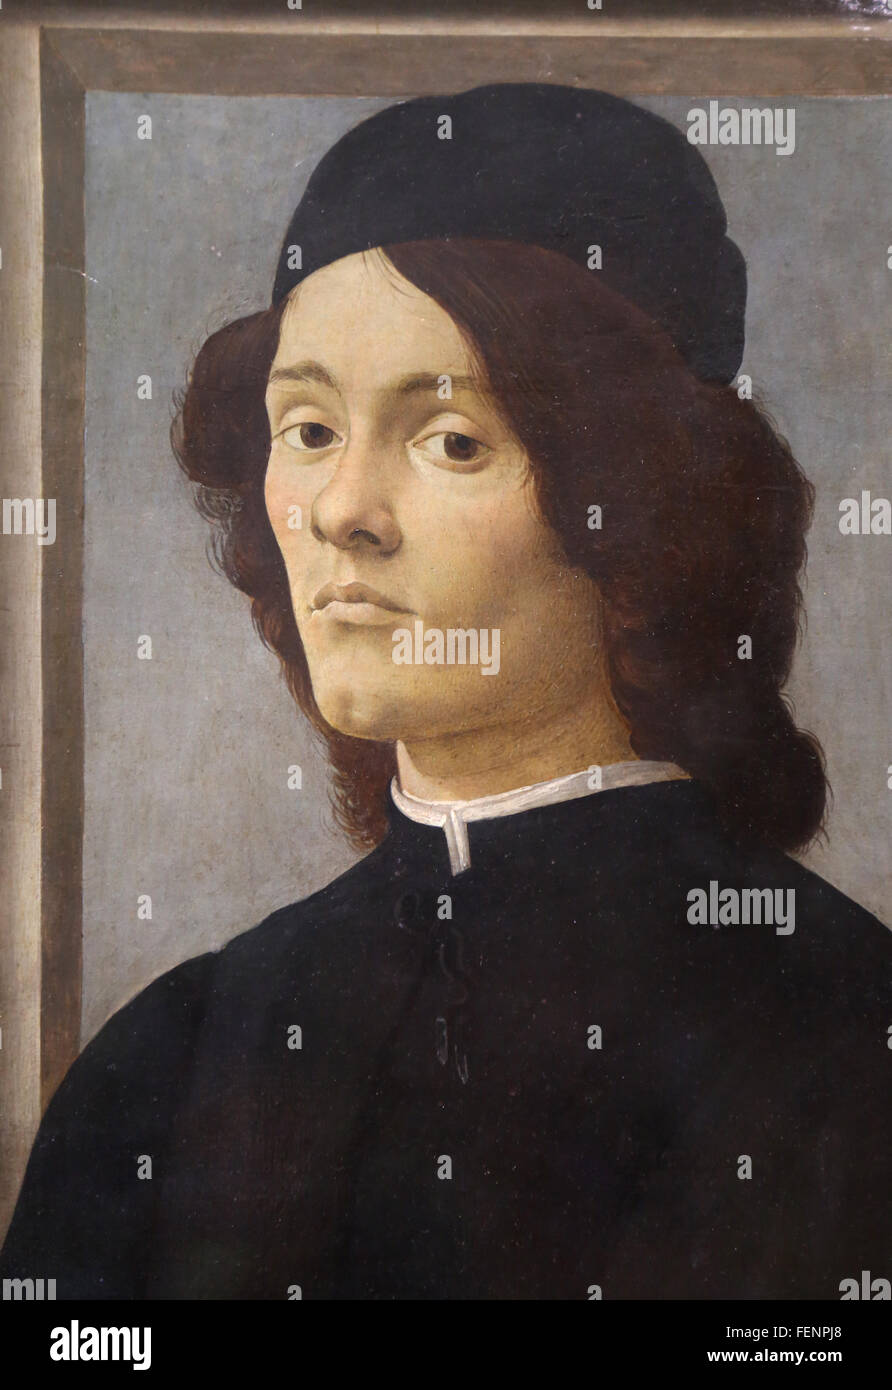 Junger Mann, 1475-1500, von Sandro Botticelli (1445-1510). Italienischen Renaissance. Louvre-Museum. Paris. Frankreich. Stockfoto